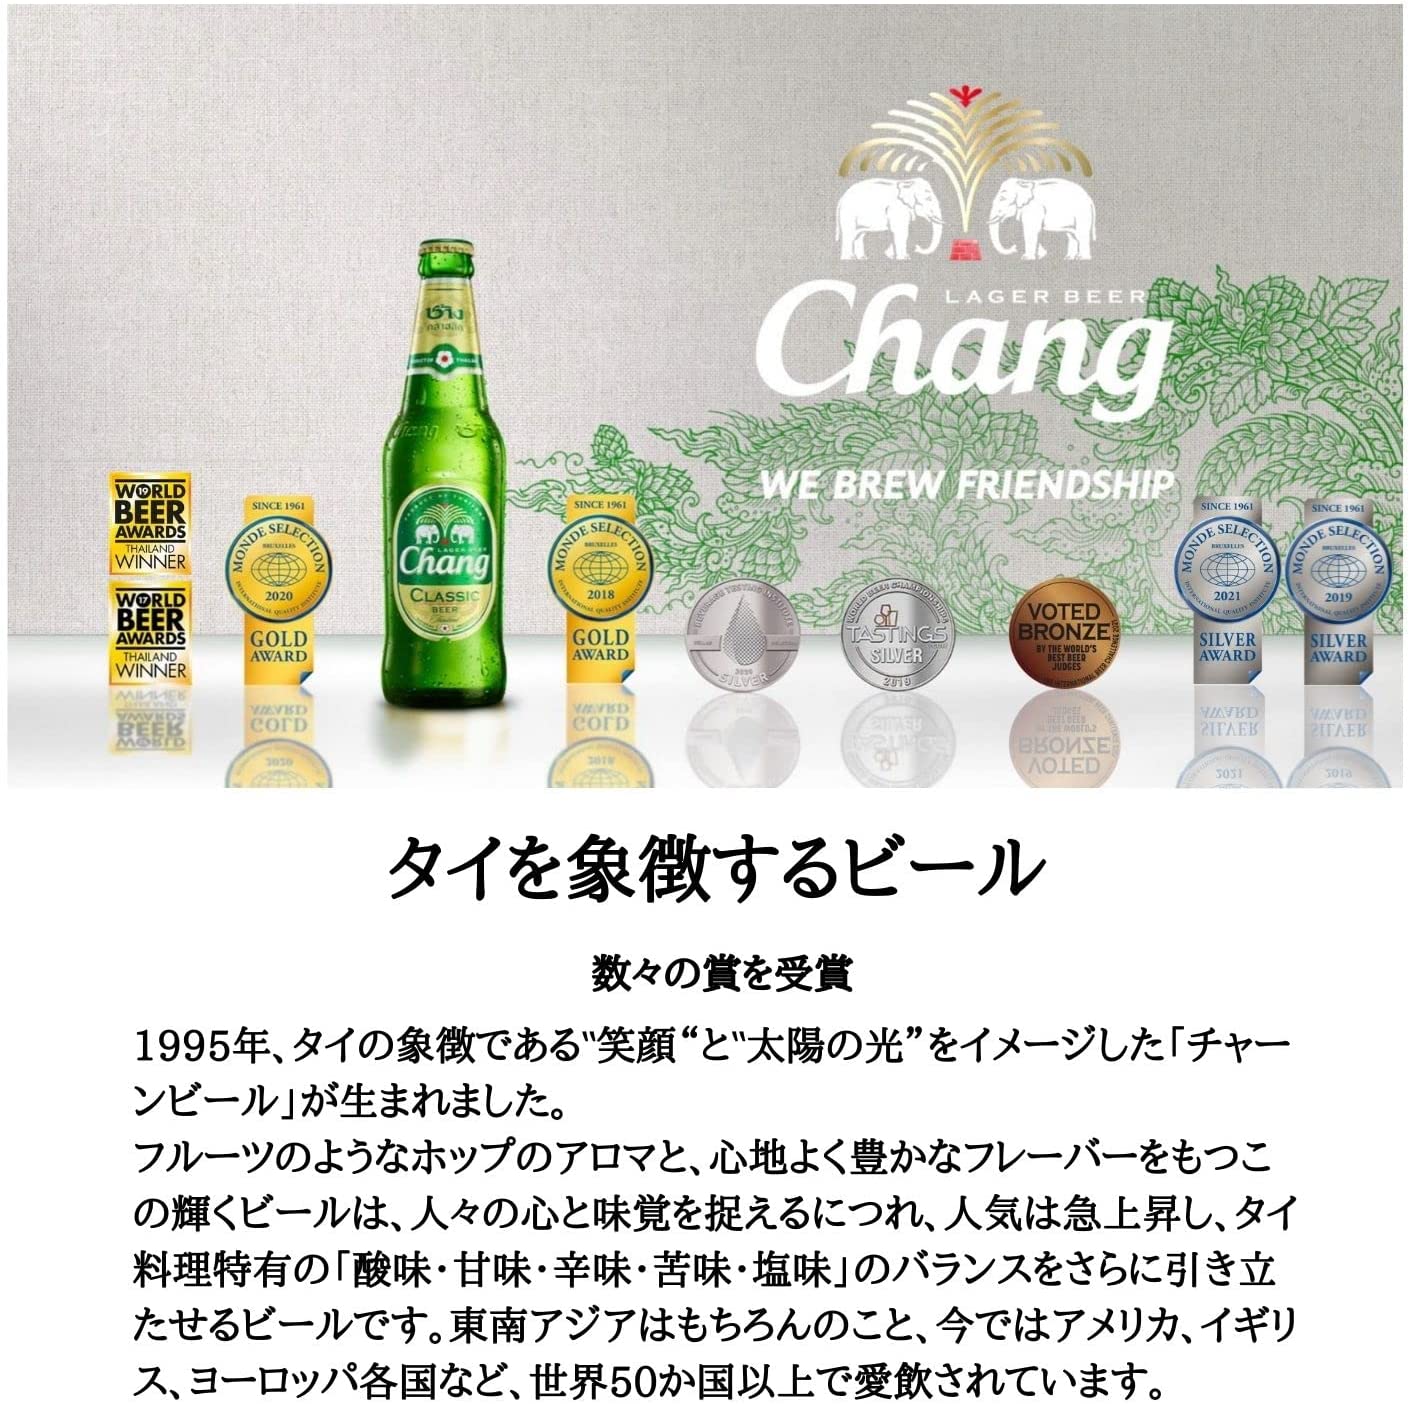 Chang Bier 0,3l Dose - Die Nr.1 aus Thailand mit 5% Alc.